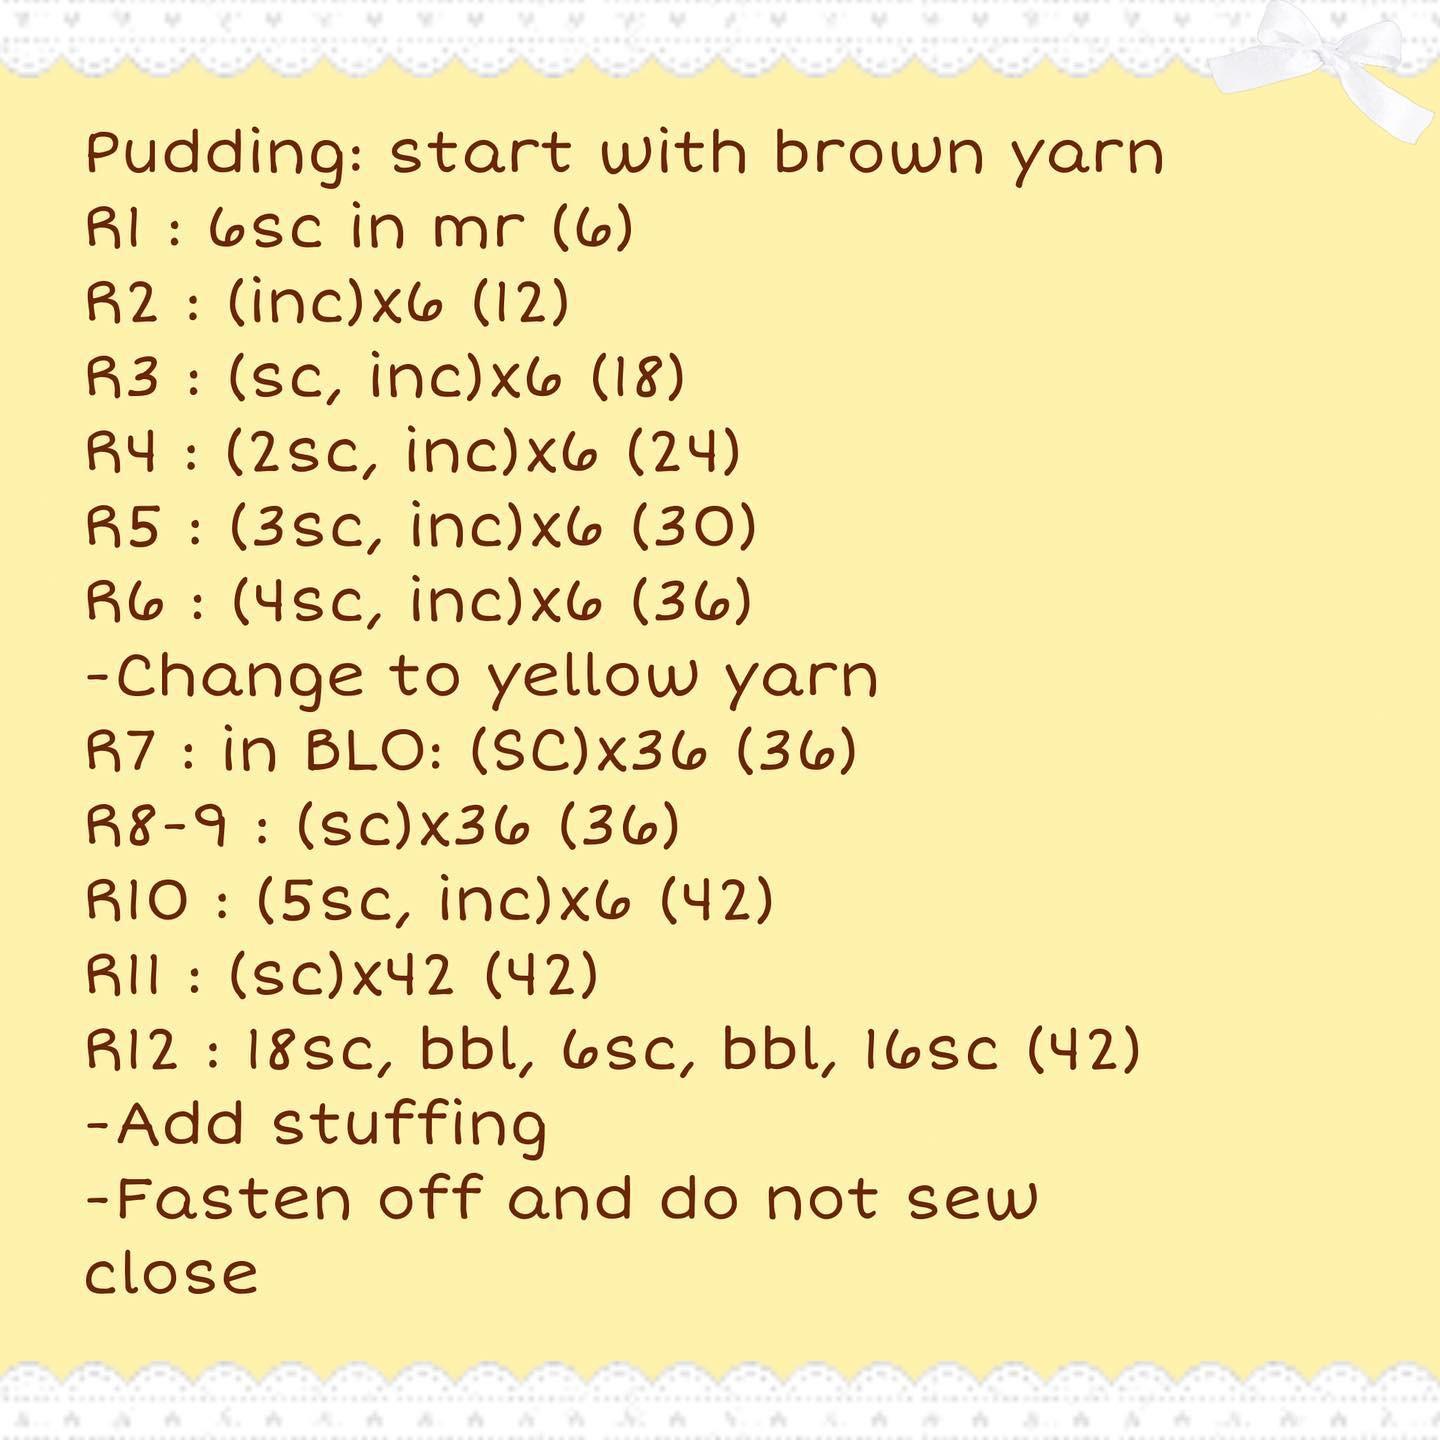 free crochet pattern pudding bunny